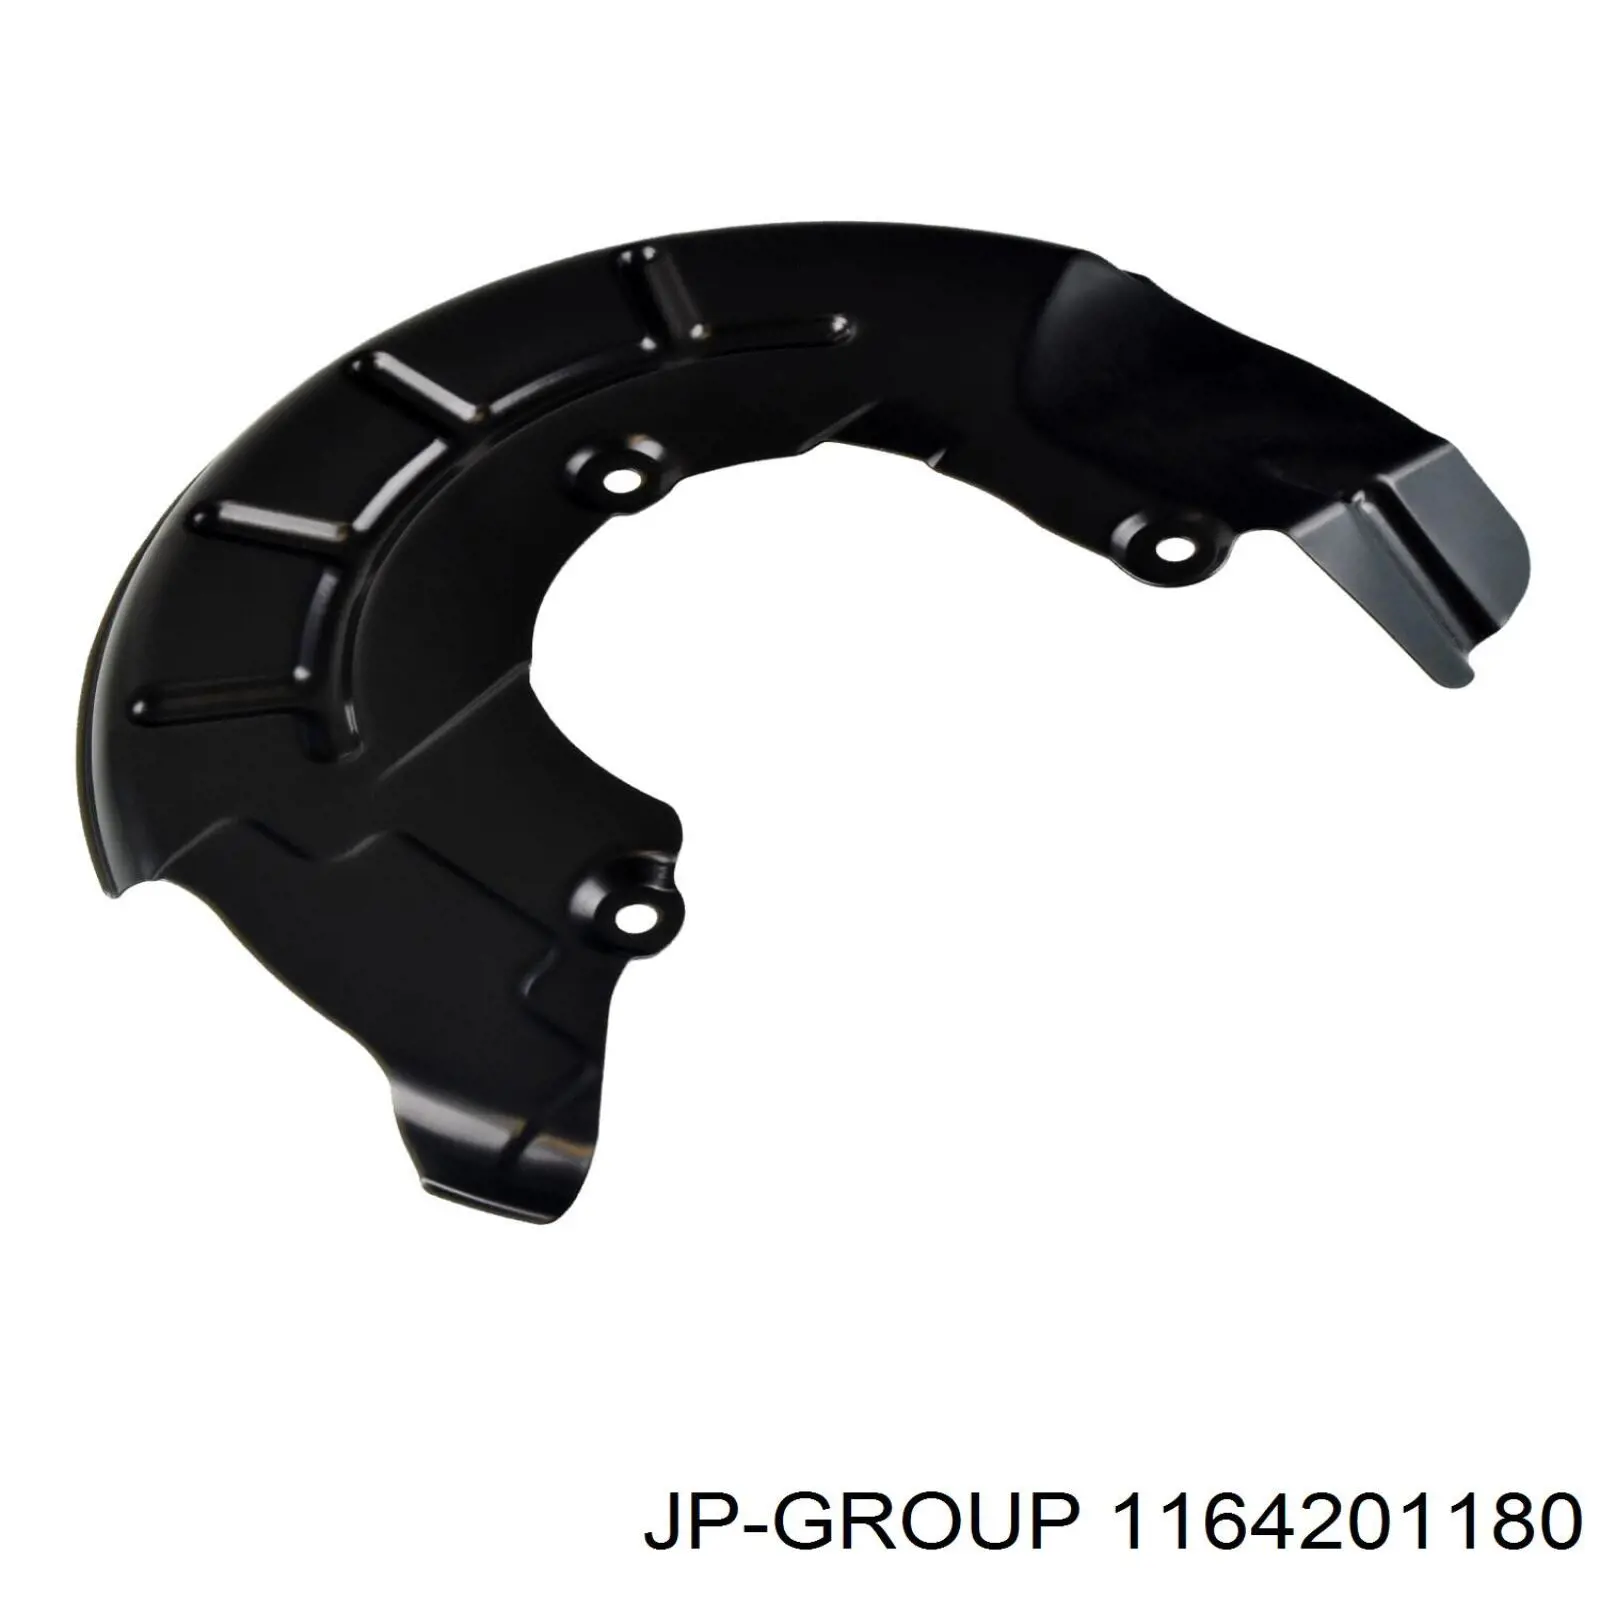 1164201180 JP Group chapa protectora contra salpicaduras, disco de freno delantero derecho